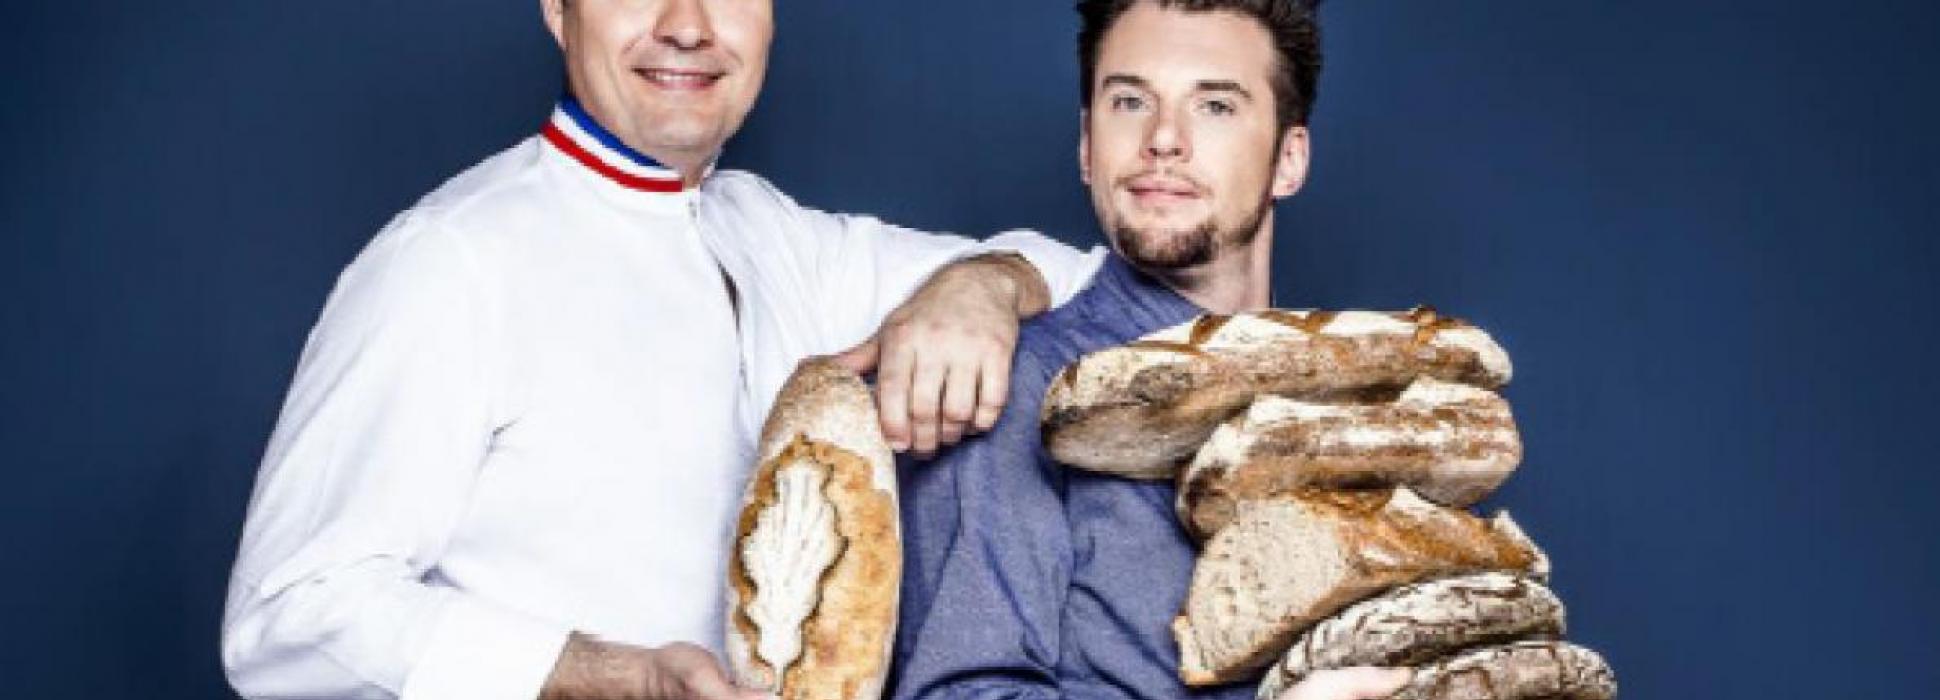 Les boulangeries normandes sont dans la course pour remporter le titre de la meilleure boulangerie de France sur M6